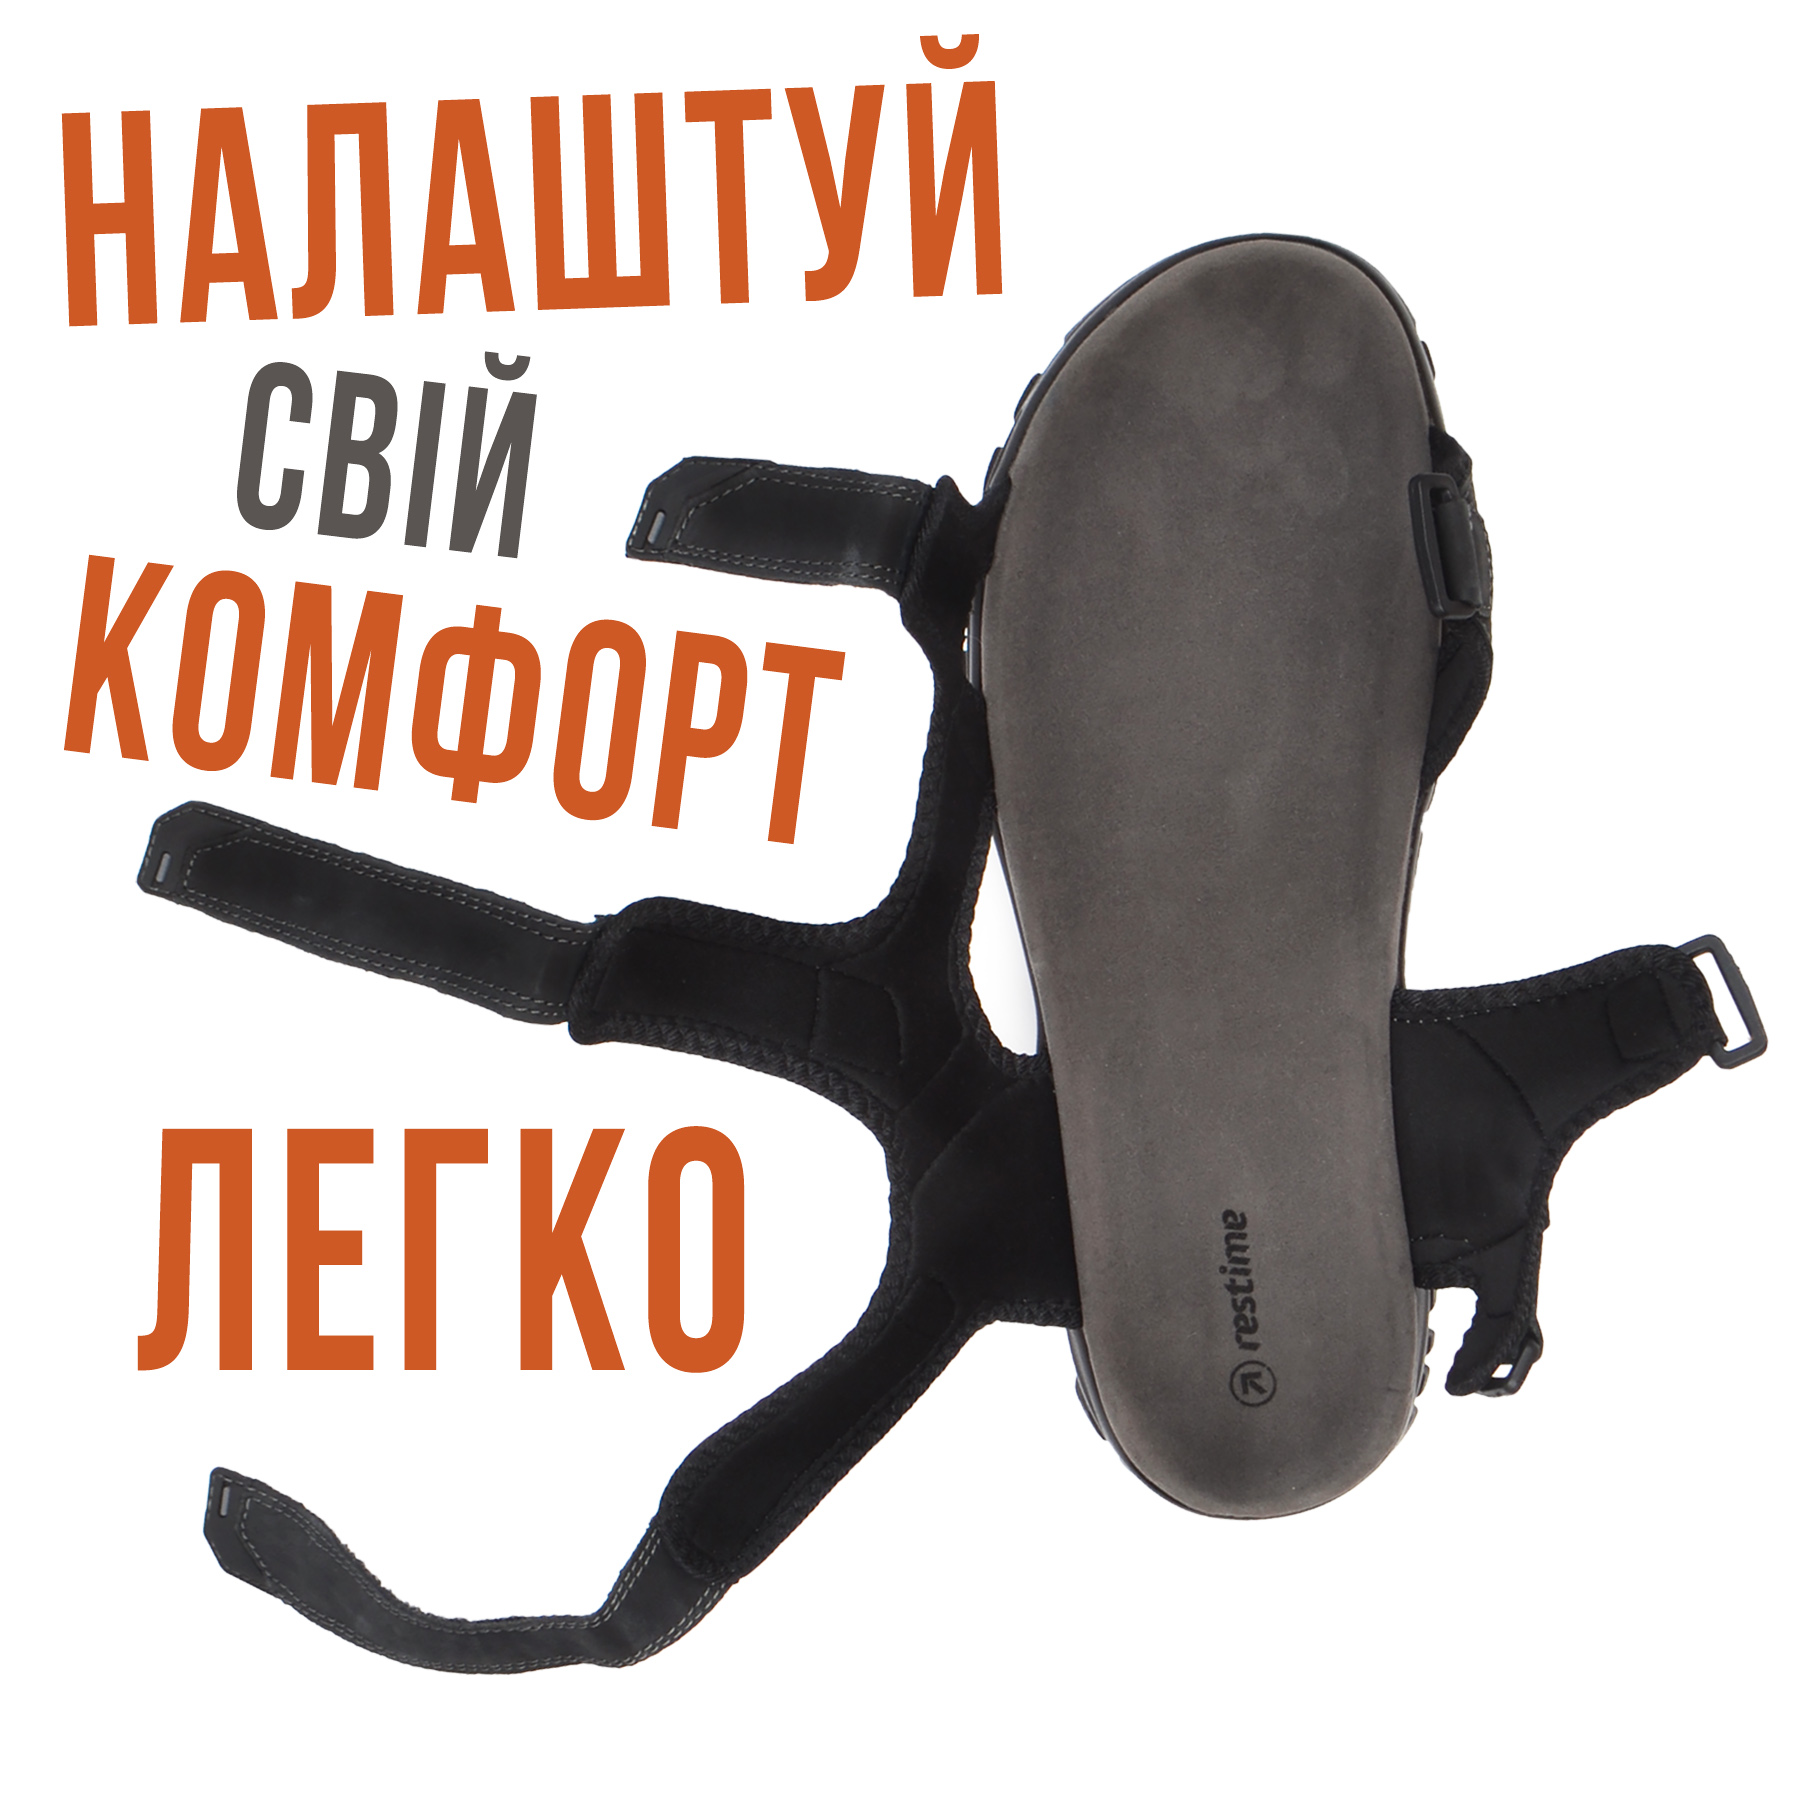 Мужские кожаные сандалии с регулировкой полноты и длины на липучках большие размеры от 46 по 49 цвет черный купить в интернет-магазине обуви Nanogu Украина